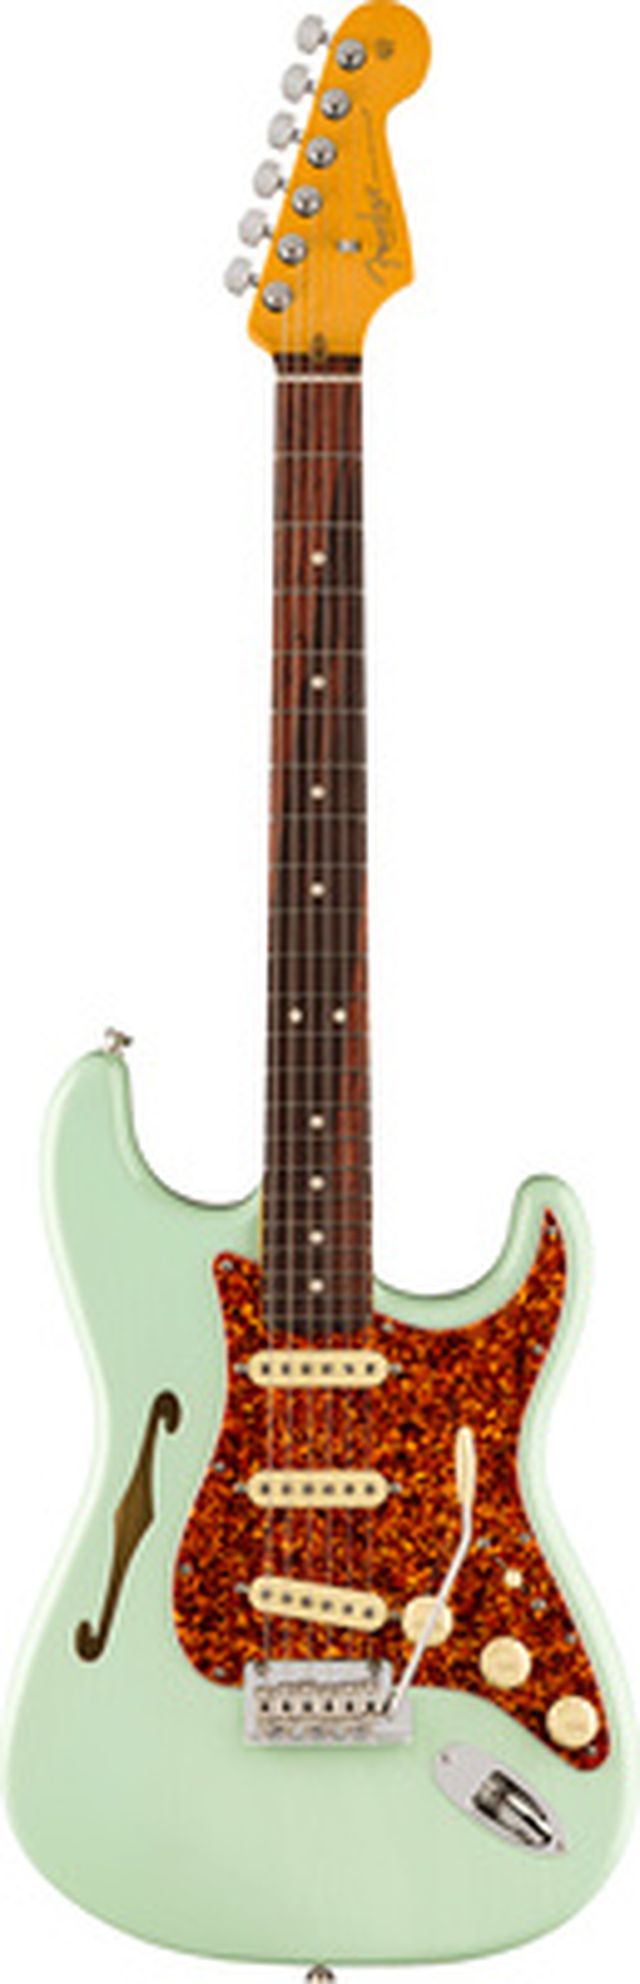 Fender LTD Am Pro II Strat Thin SFG